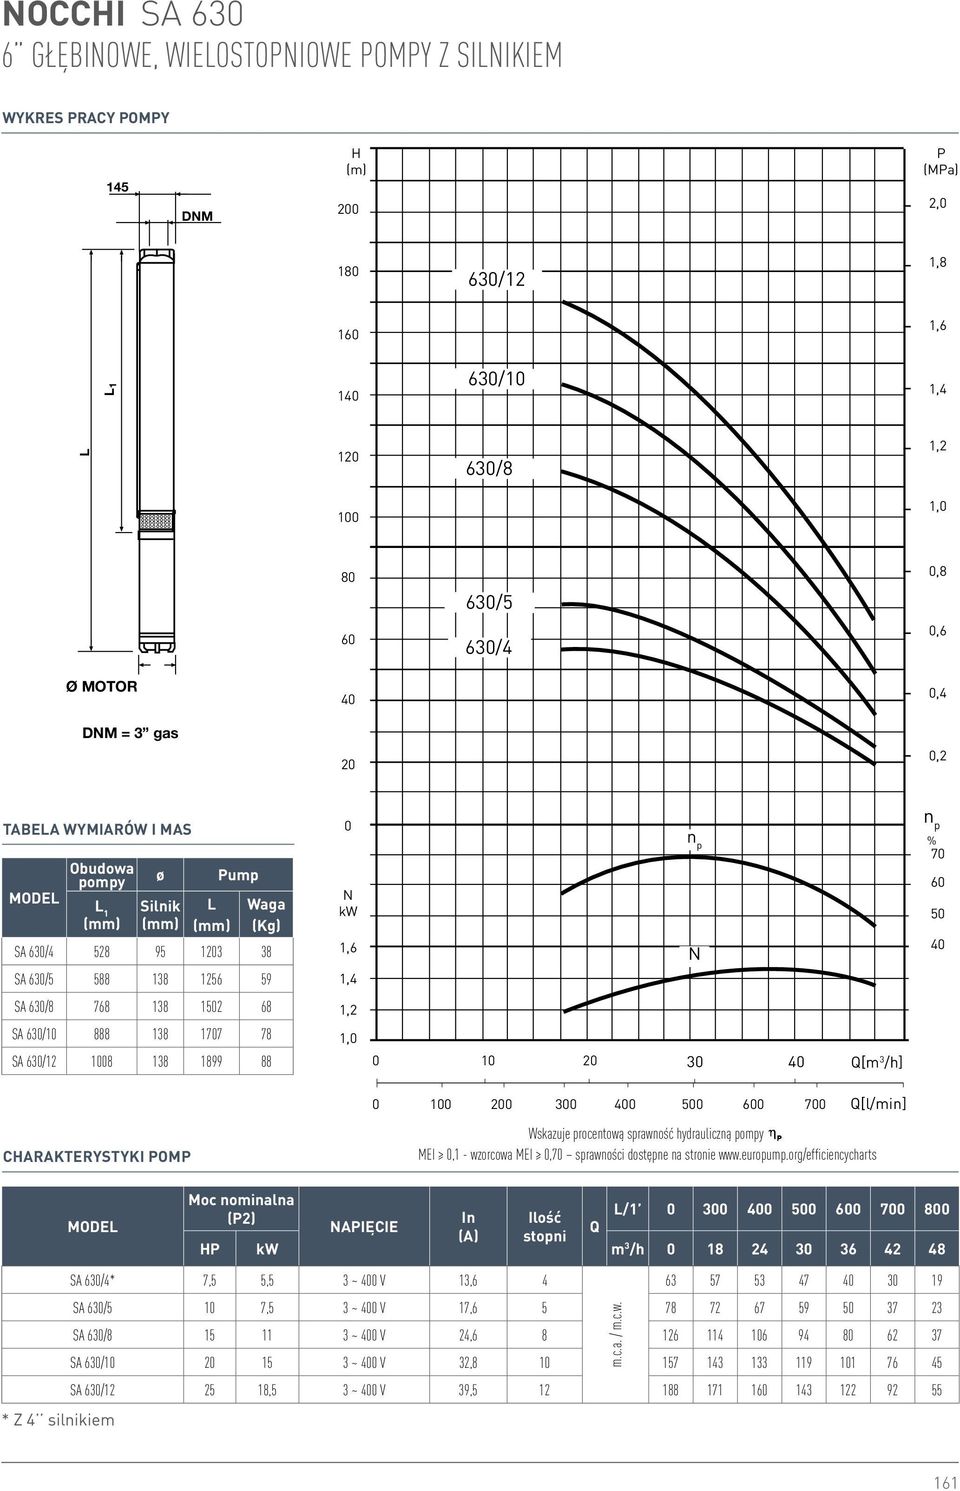 7 Q[l/min] Wskazuje procentową sprawność hydrauliczną pompy MEI,1 - wzorcowa MEI,7 sprawności dostępne na stronie www.europump.